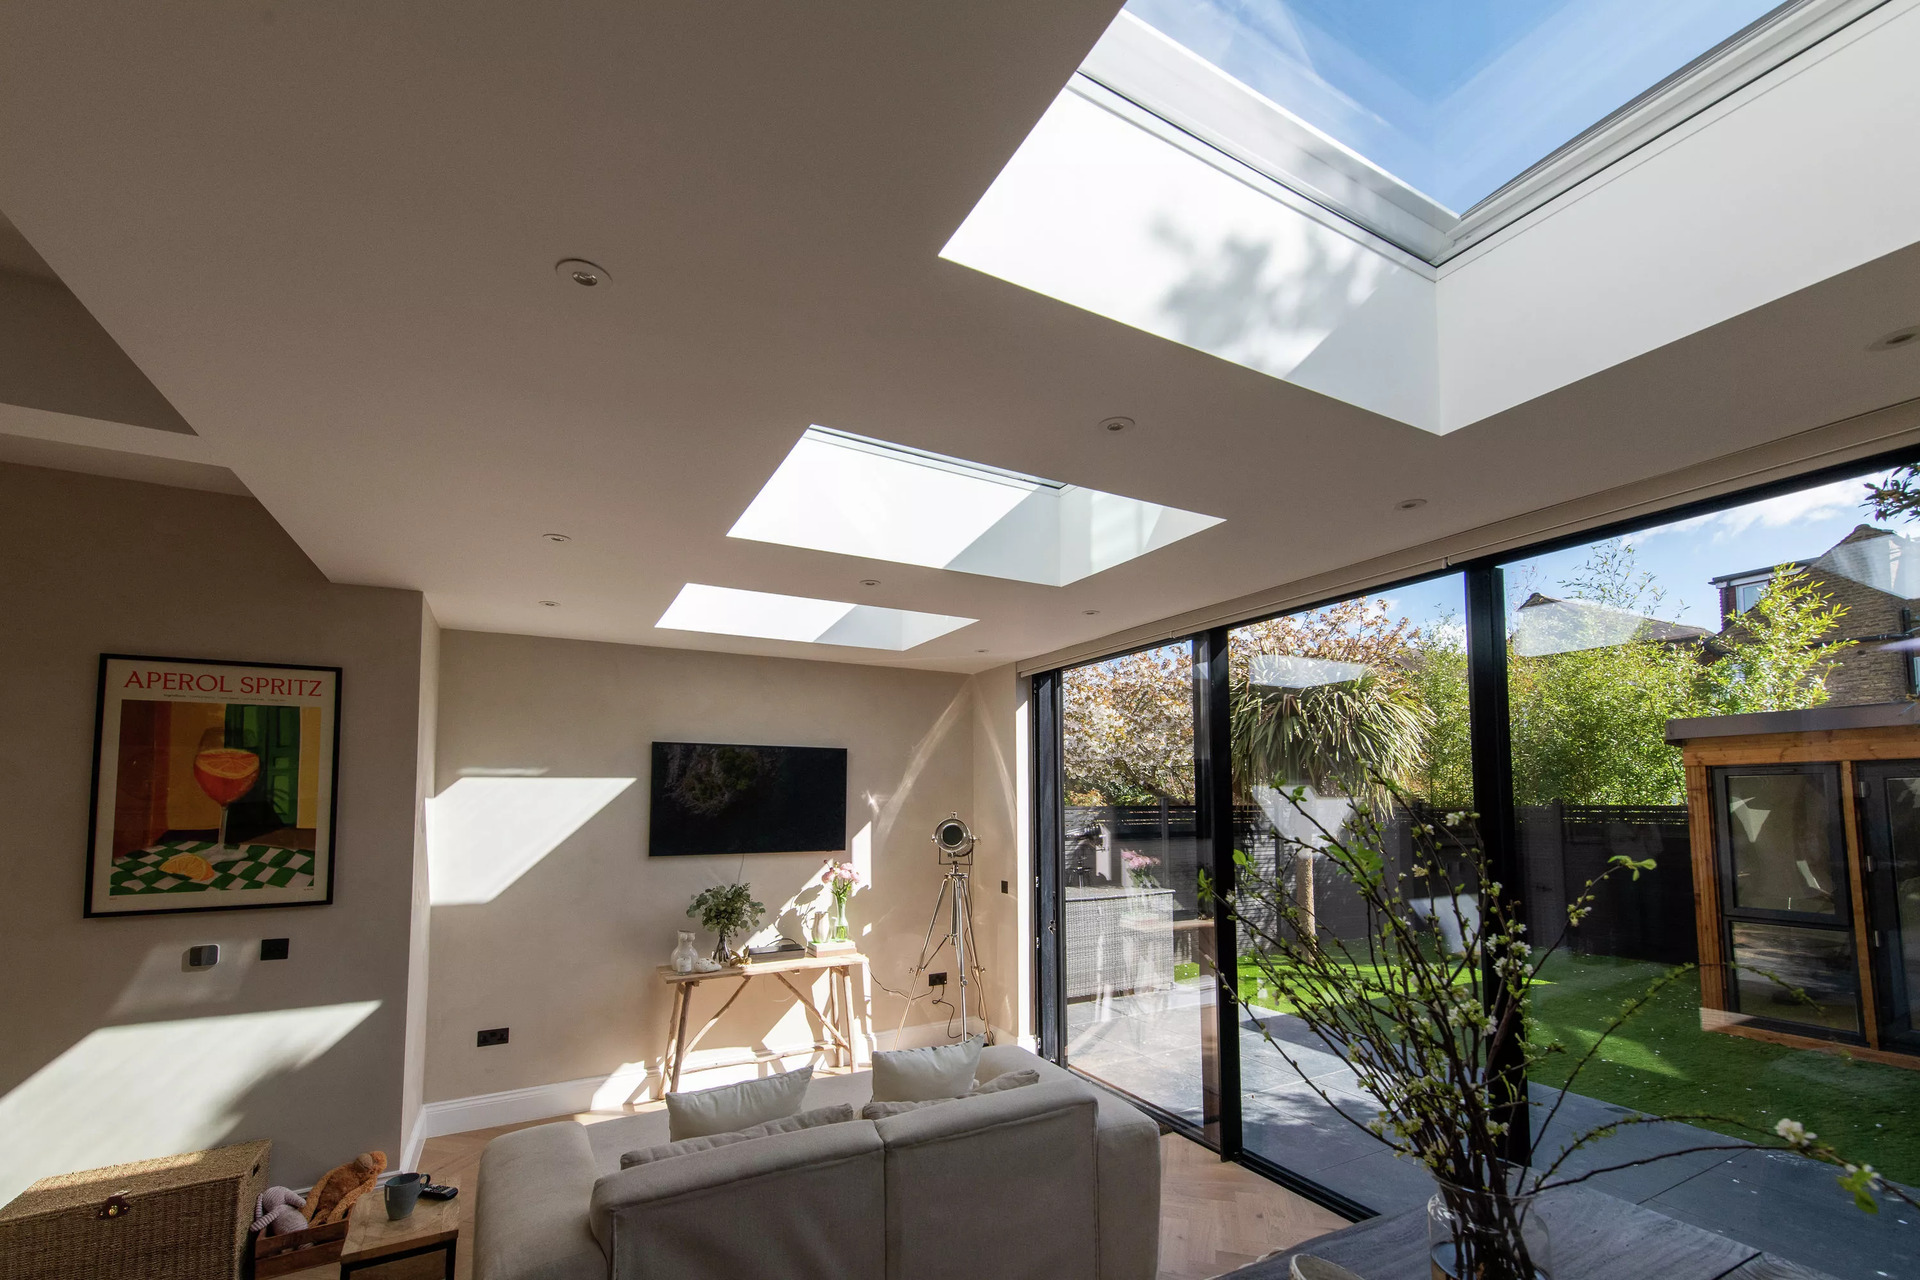 Soggiorno moderno con finestre per tetti VELUX e vista sul giardino.